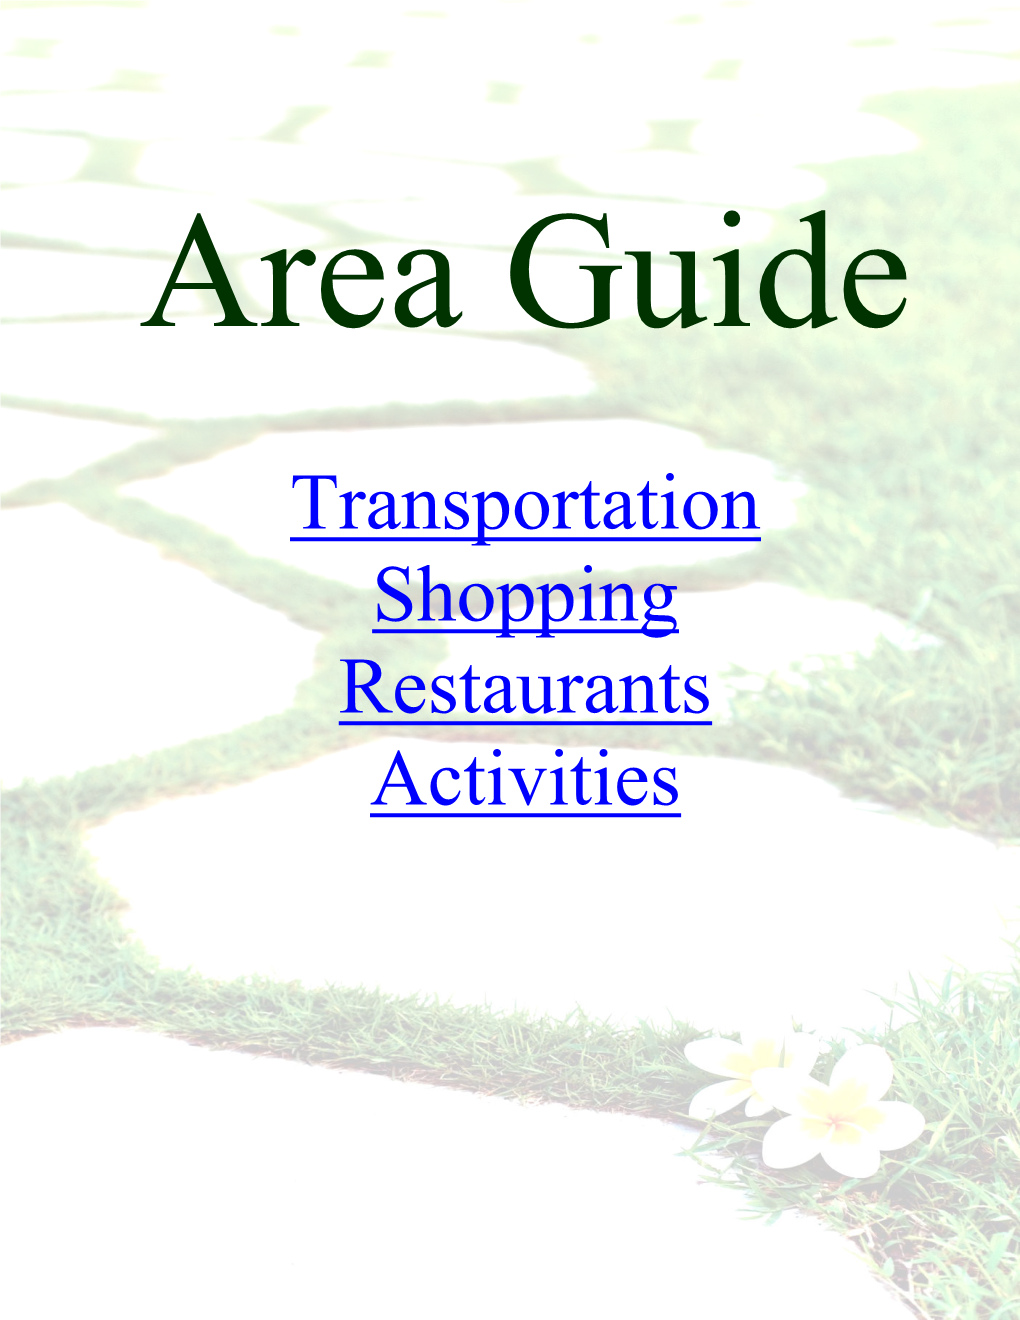 Transportation Shopping Restaurants Activities